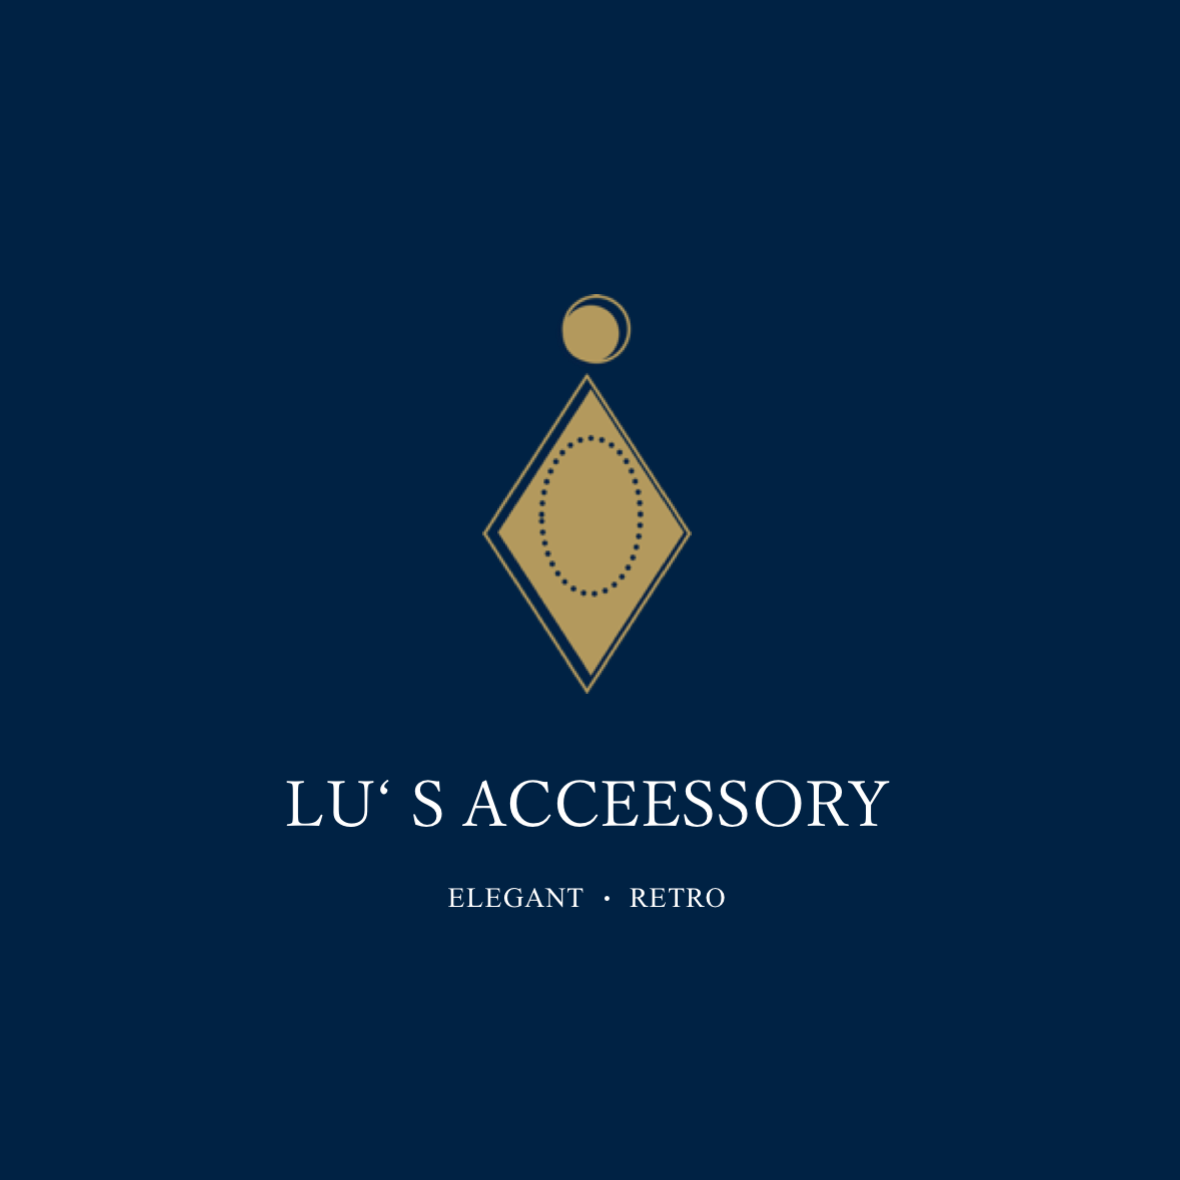 Lu’s accessory